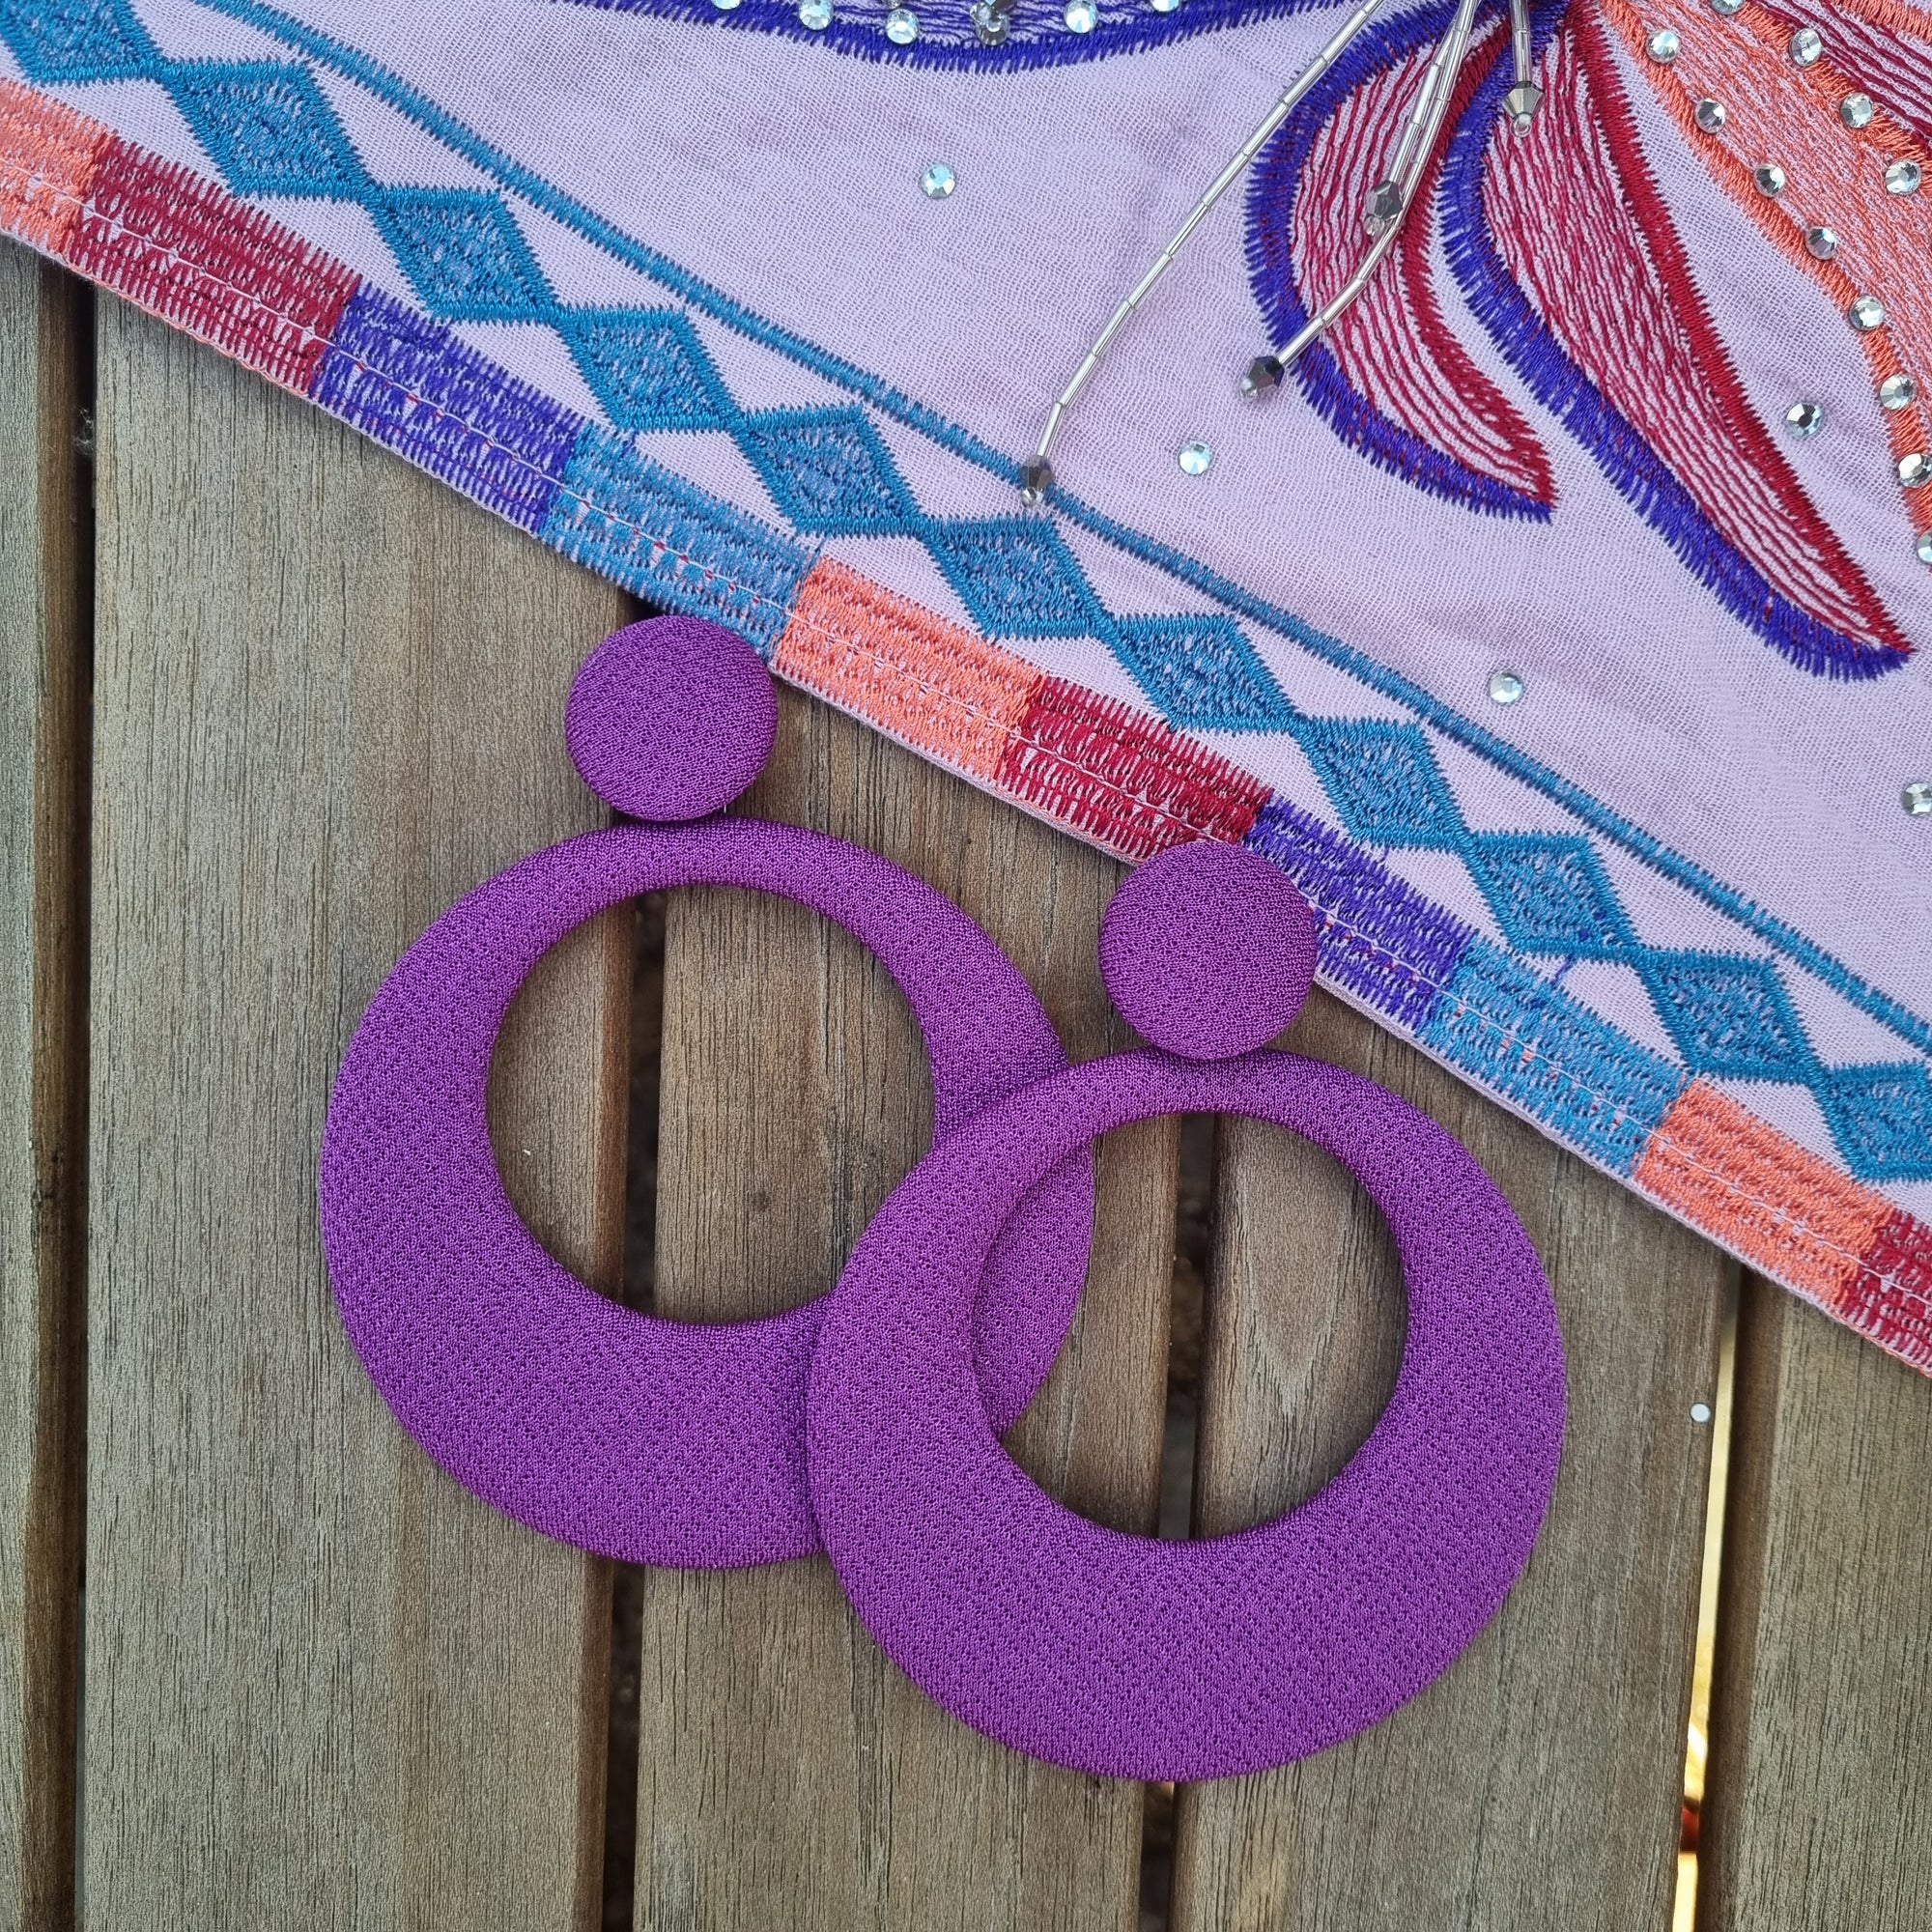 Cascade purple earrings